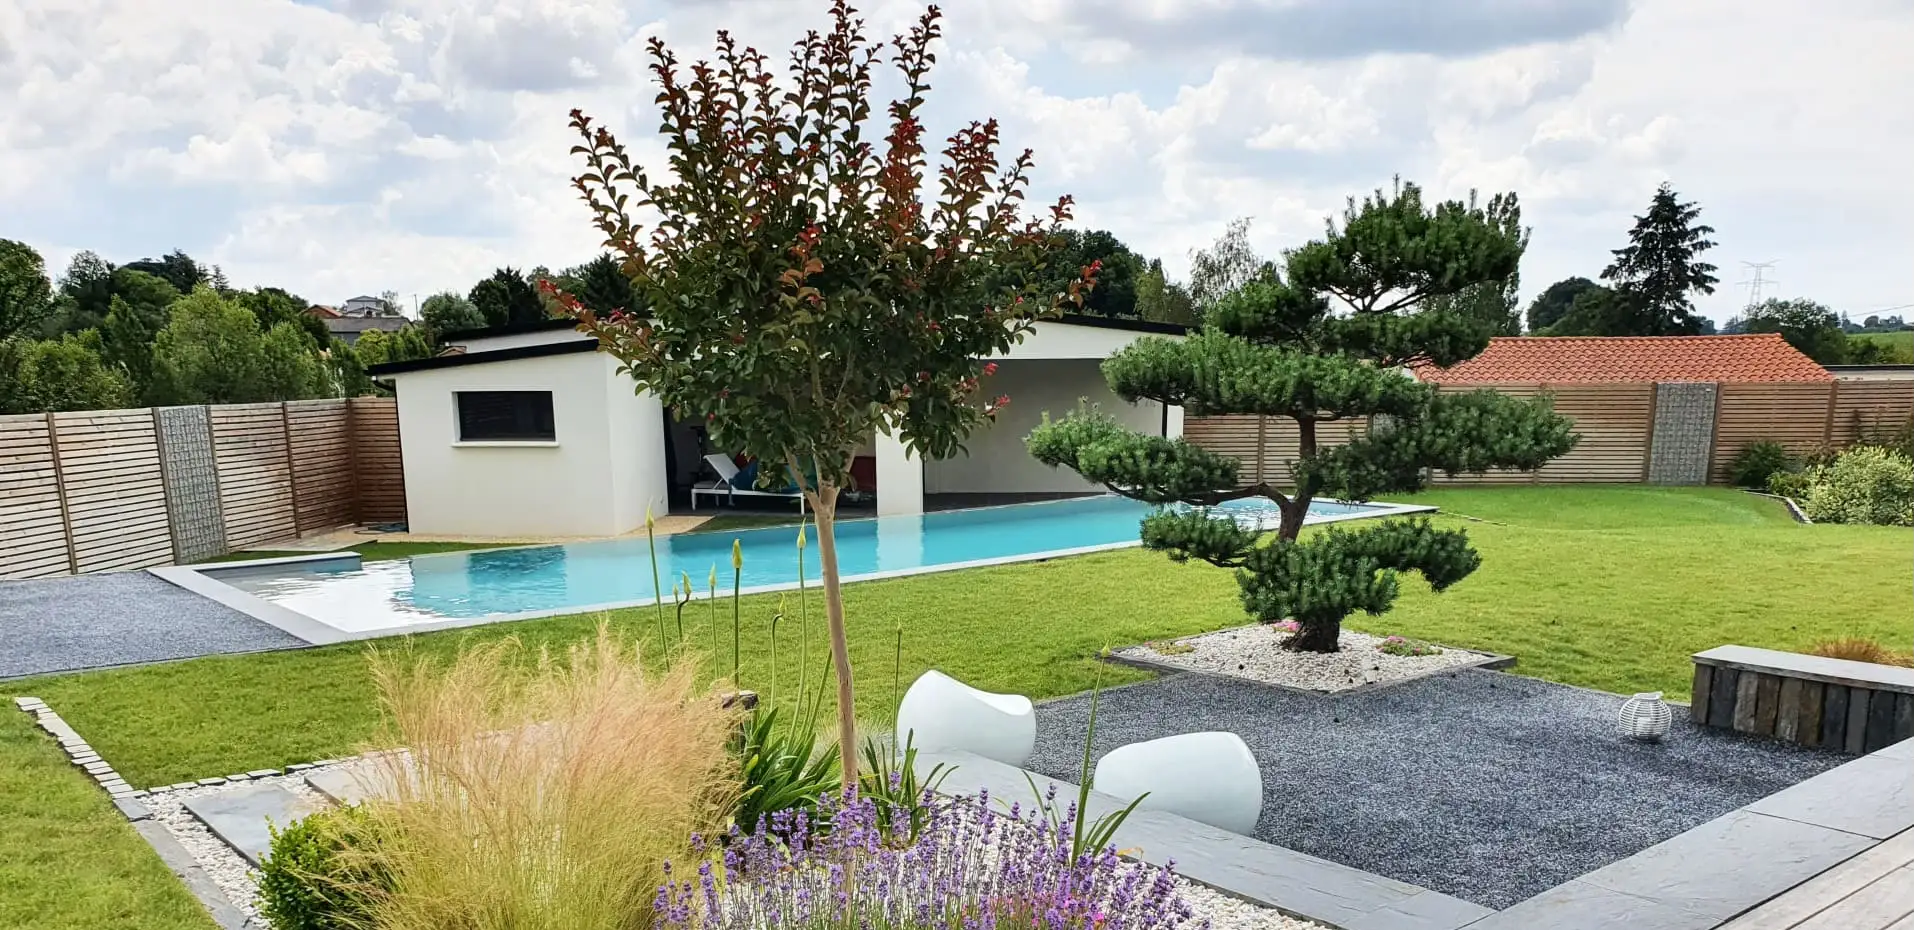 Création d'espaces autour de la piscine : terrasse en bois, pavage, murets, dallage, gazon...